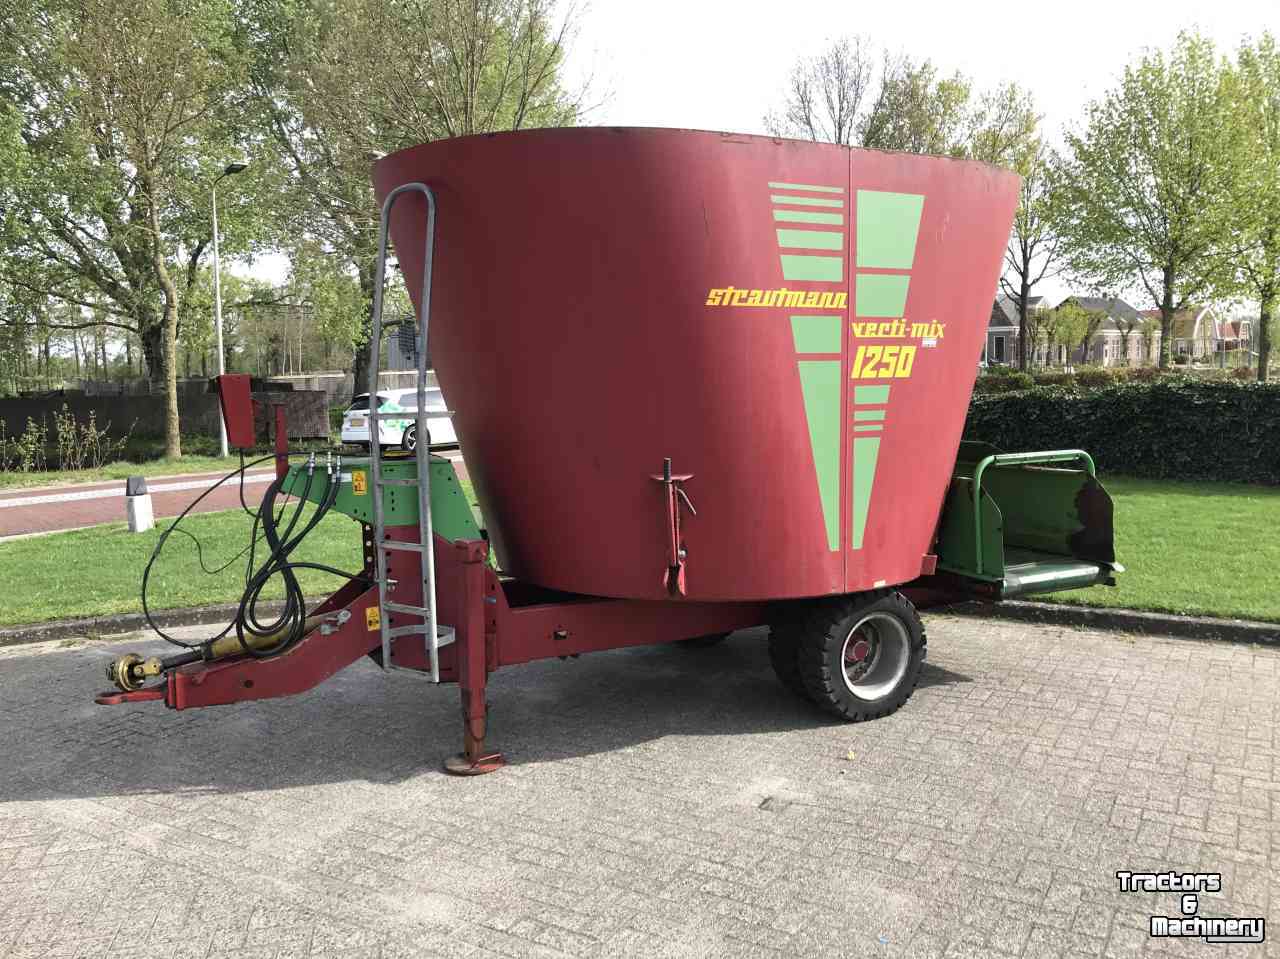 Futtermischwagen Vertikal Strautmann Vertimix 1250